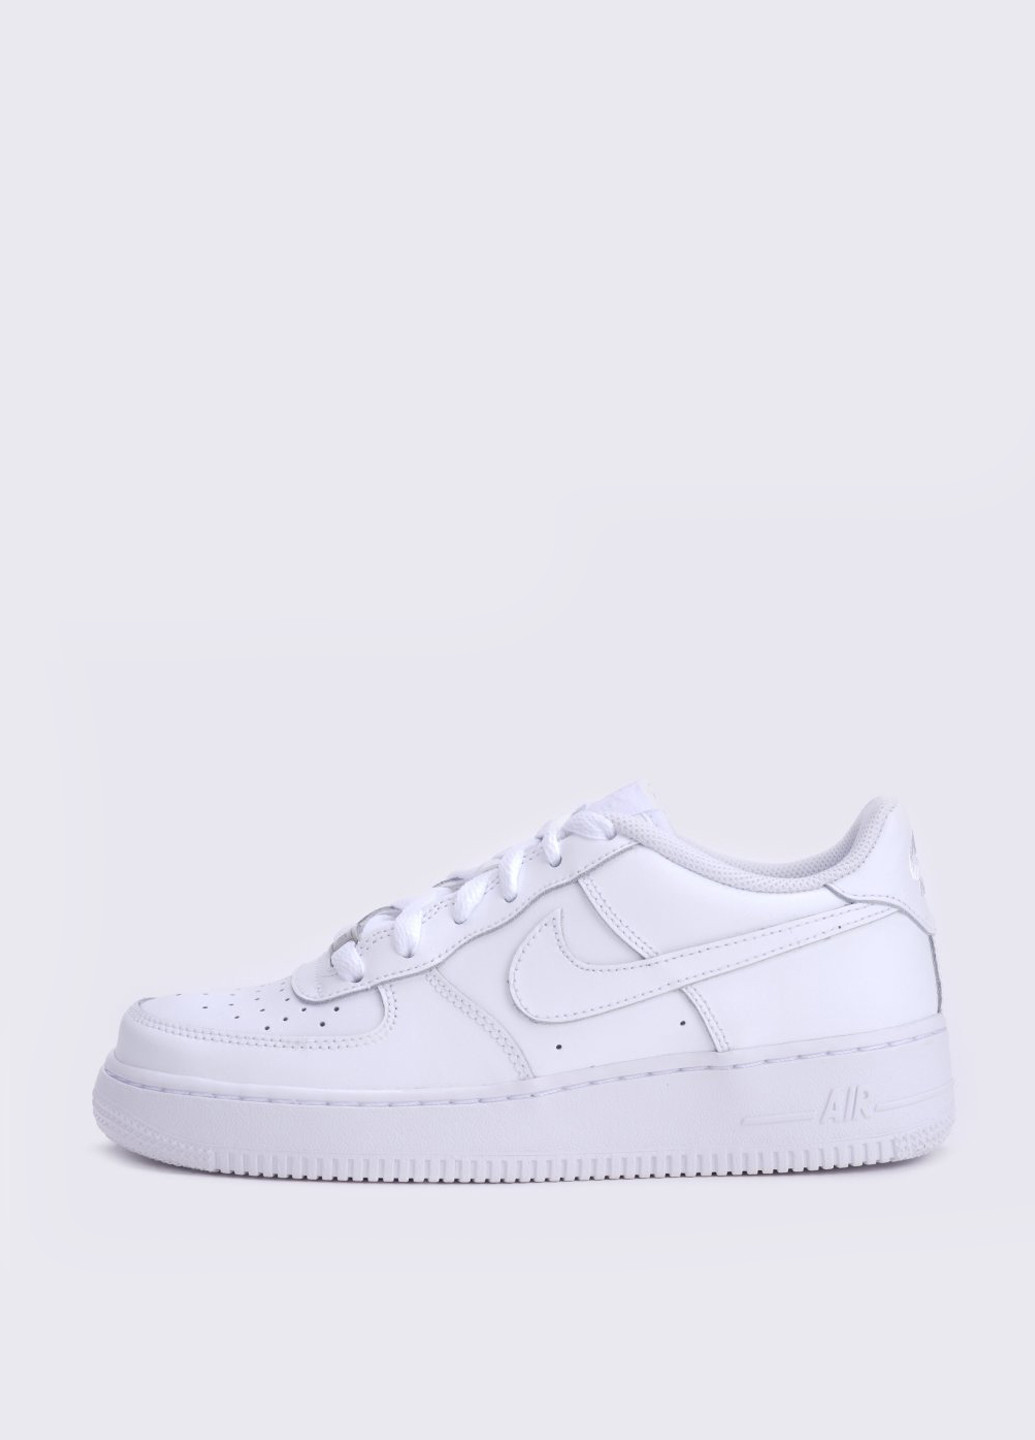 Белые кеды Nike Boys' Air Force 1 (Gs) Shoe